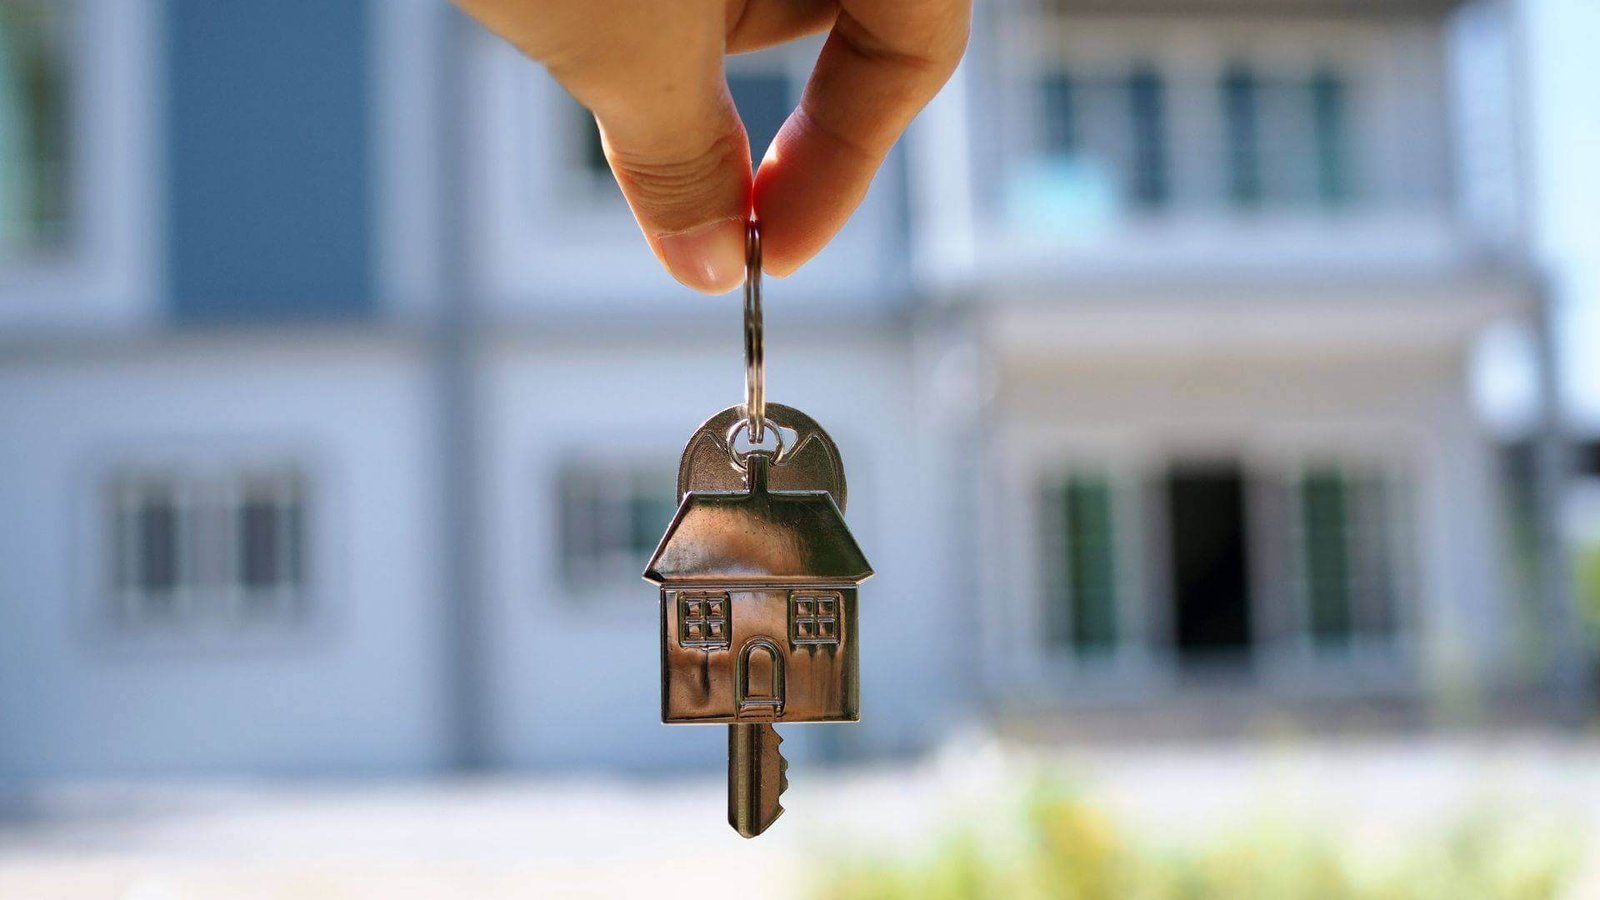 Comprar casa propia: imagen de llavero en forma de casa